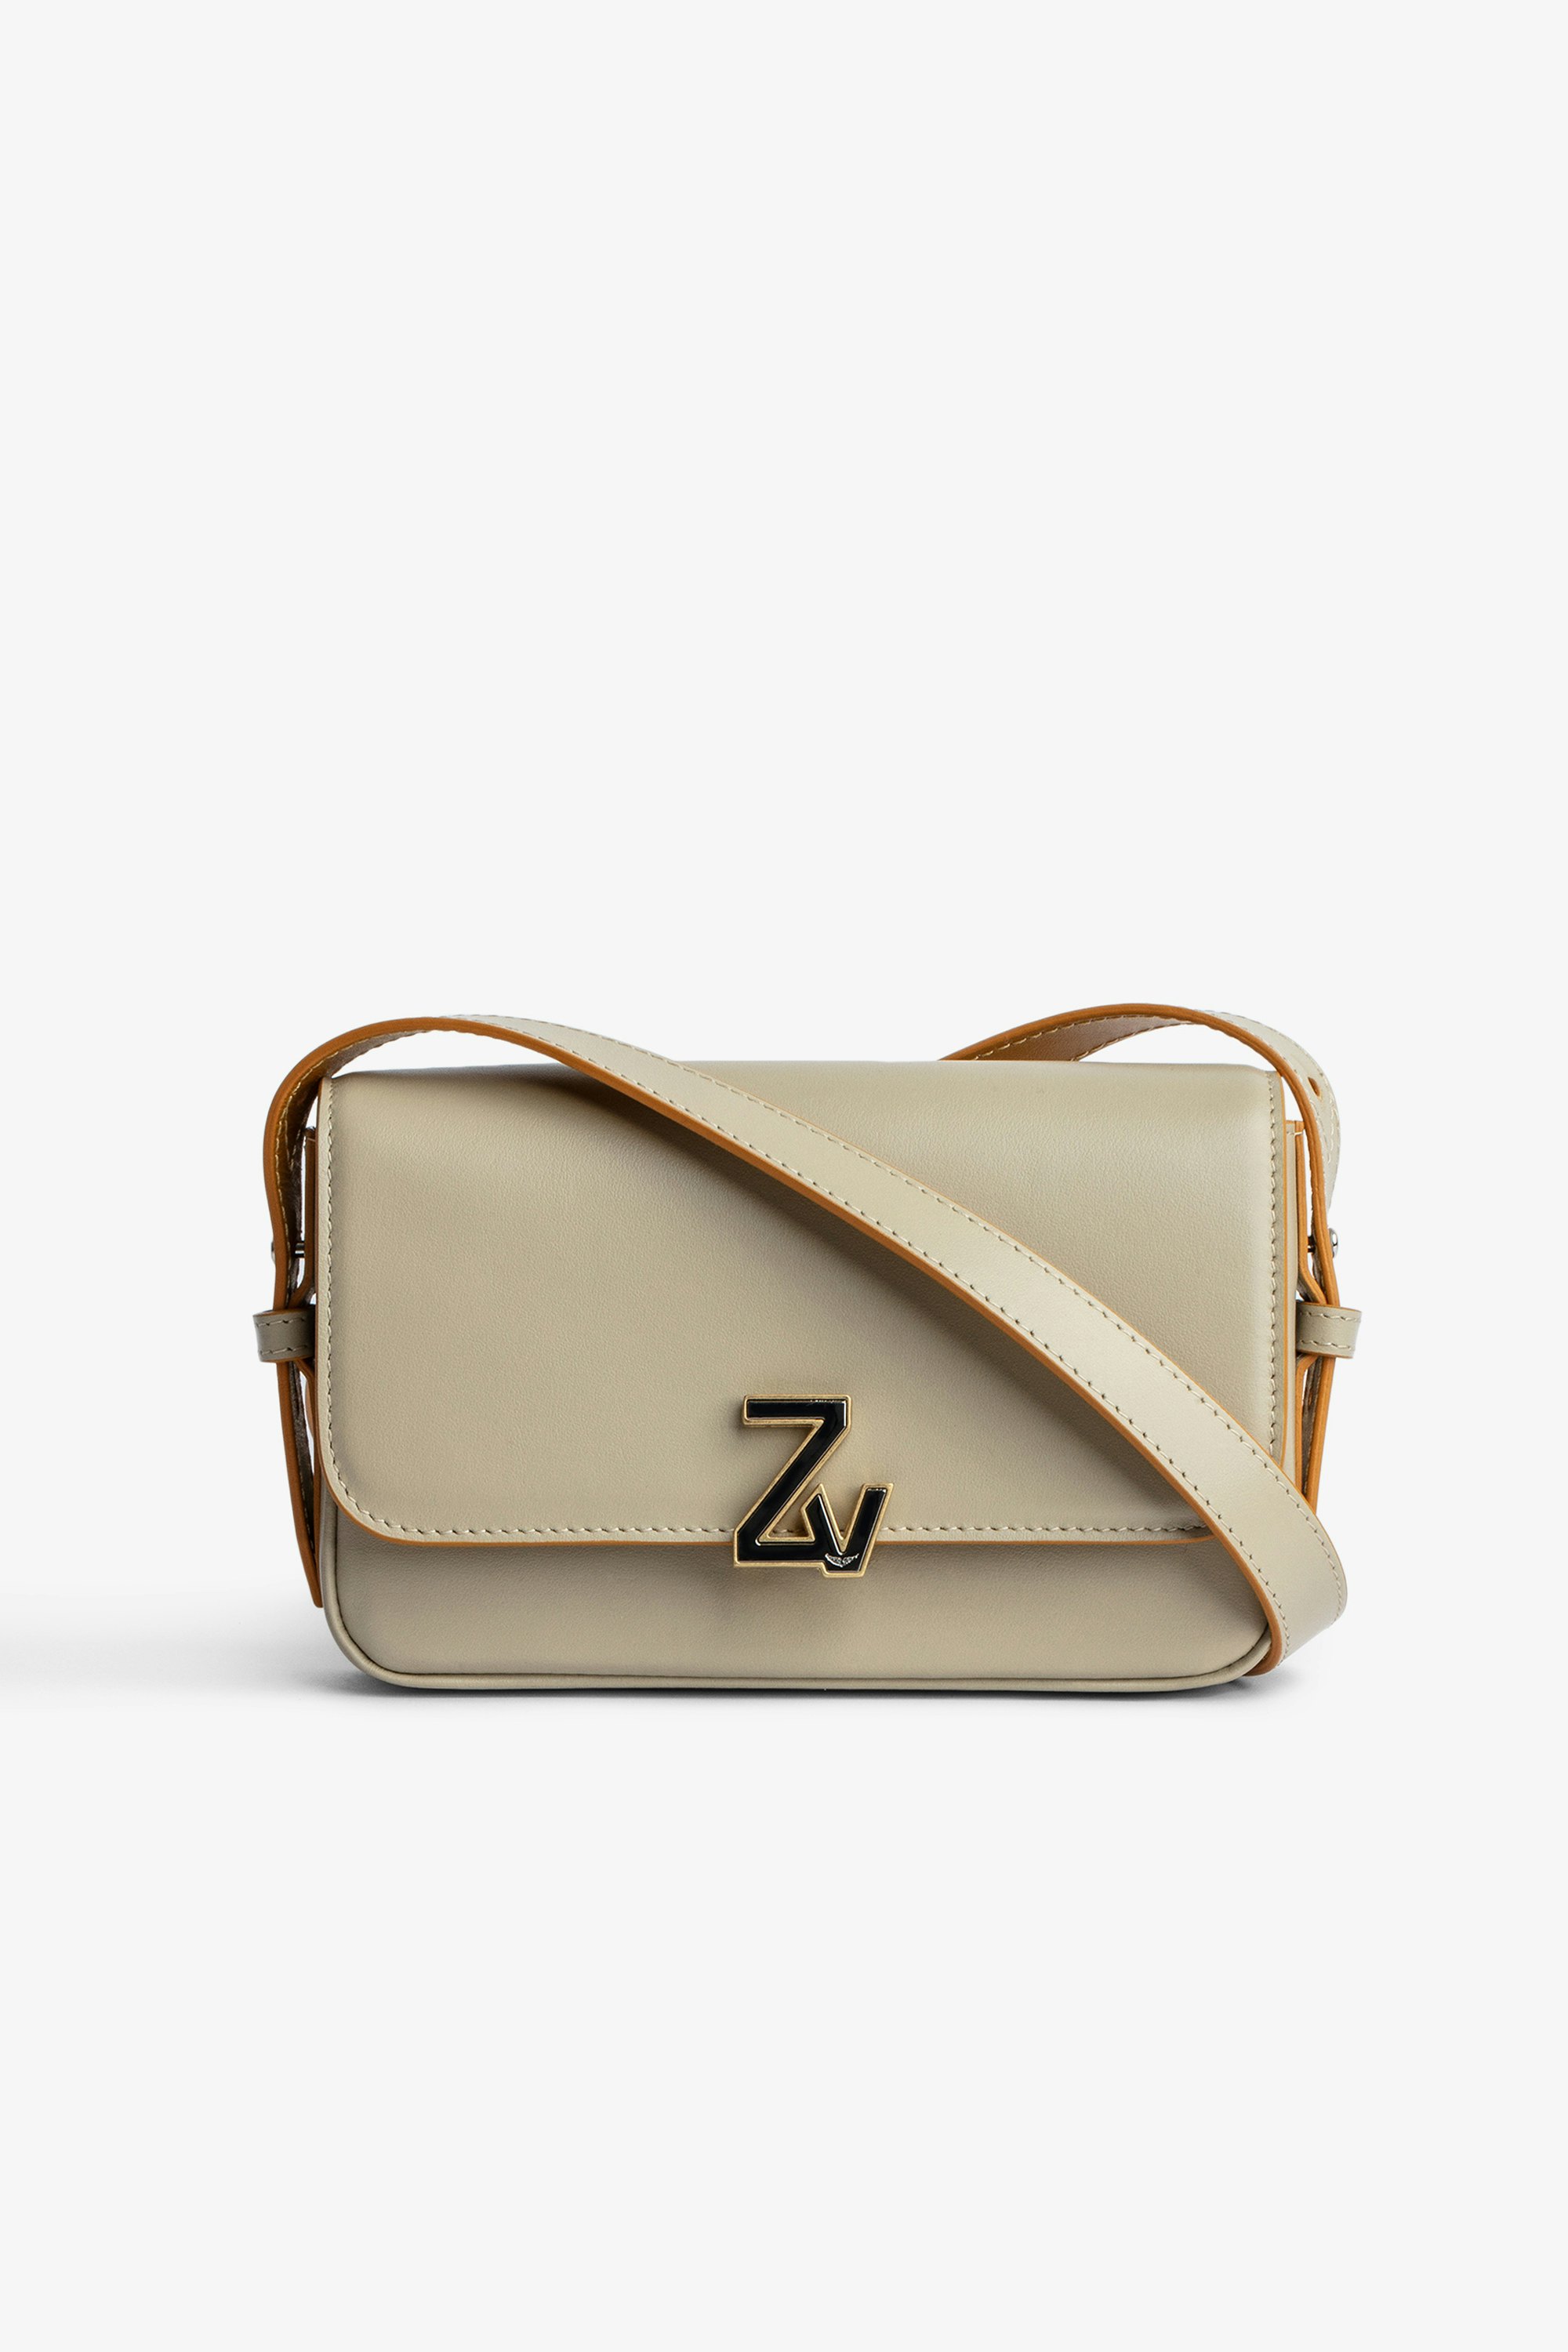 Tasche ZV Initiale Le Mini Kleine Damentasche aus beigefarbenem Glattleder mit Klappe mit ZV-Verschluss und Schulterriemen